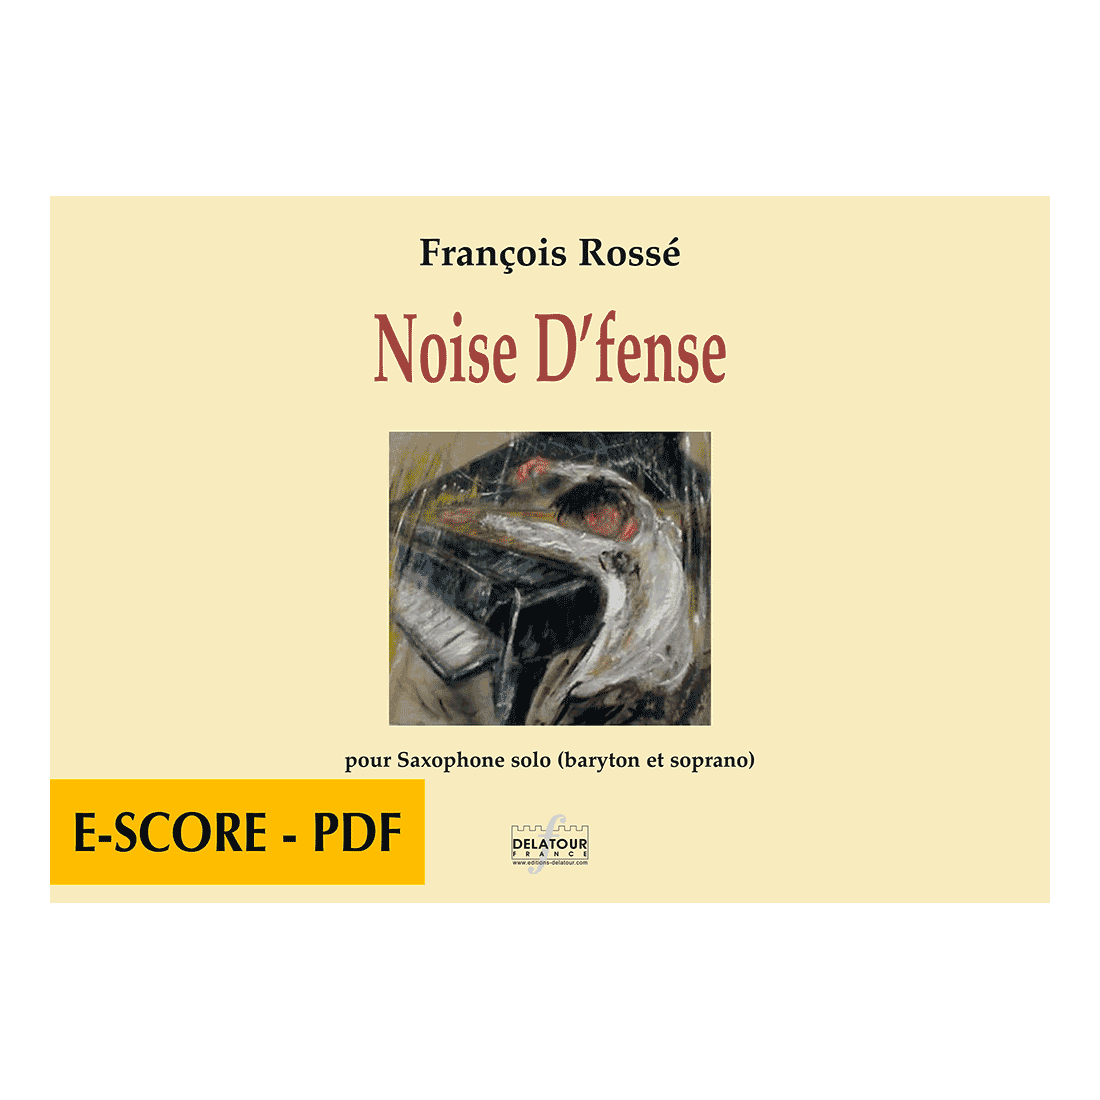 Noise D'fense pour saxophone solo - E-score PDF